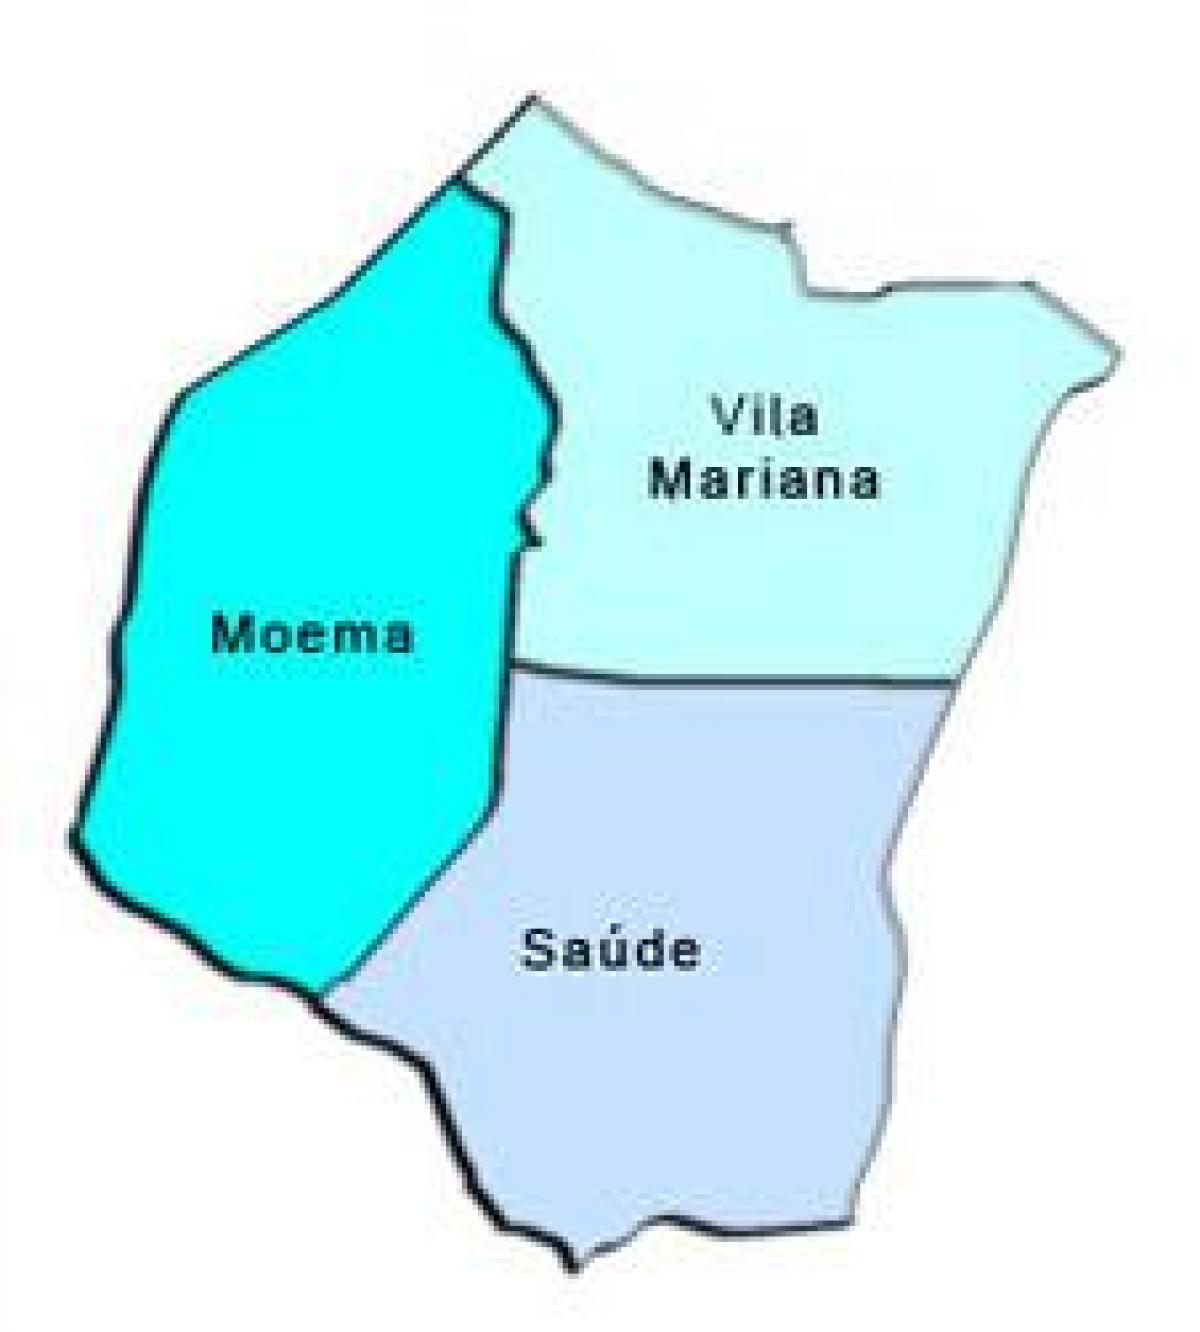 מפה של וילה מריאנה תת-פריפקטורה